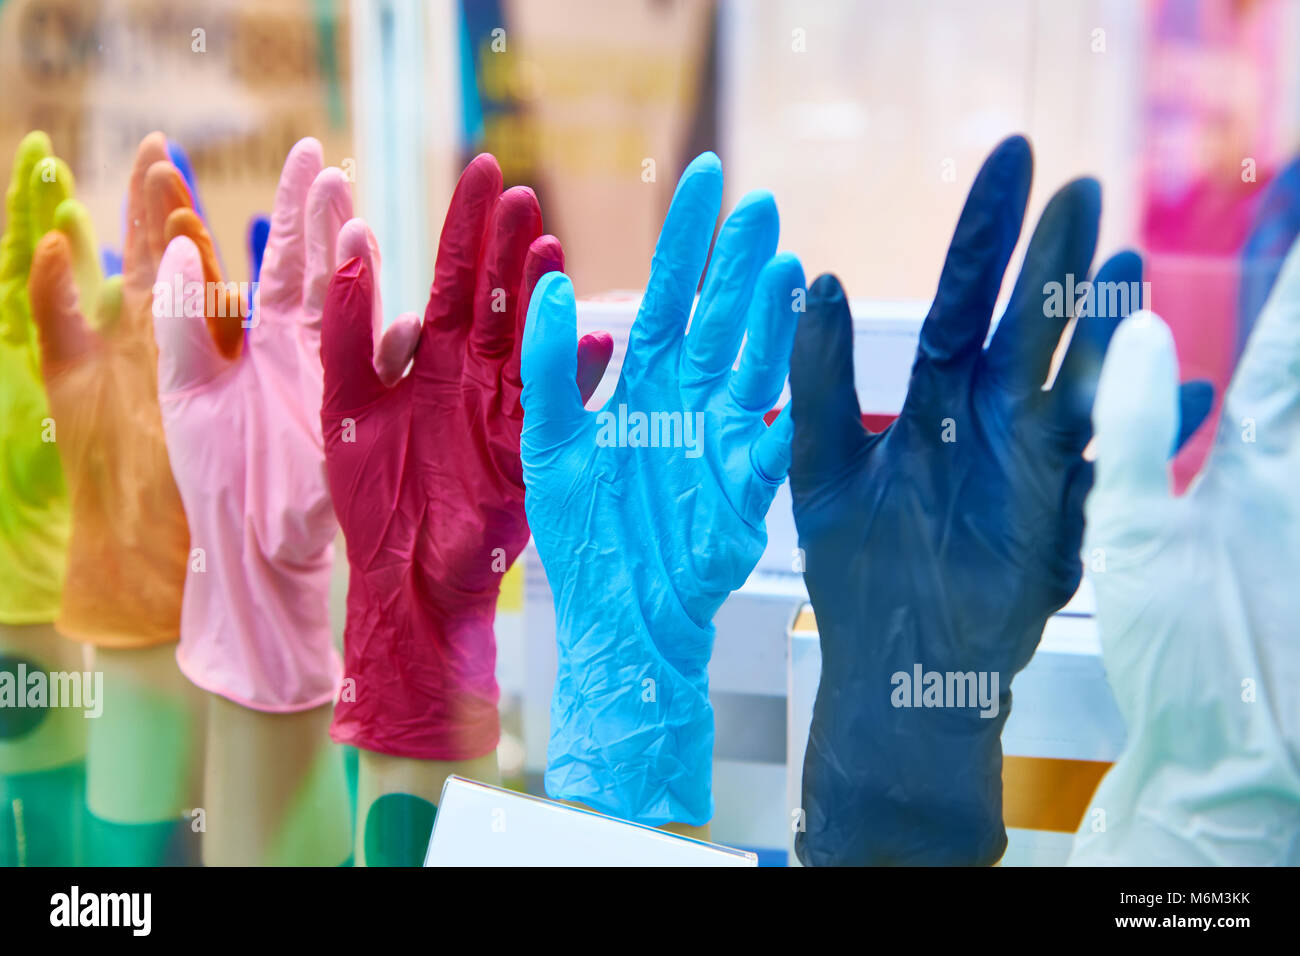 Gants en caoutchouc médical colorés Banque D'Images